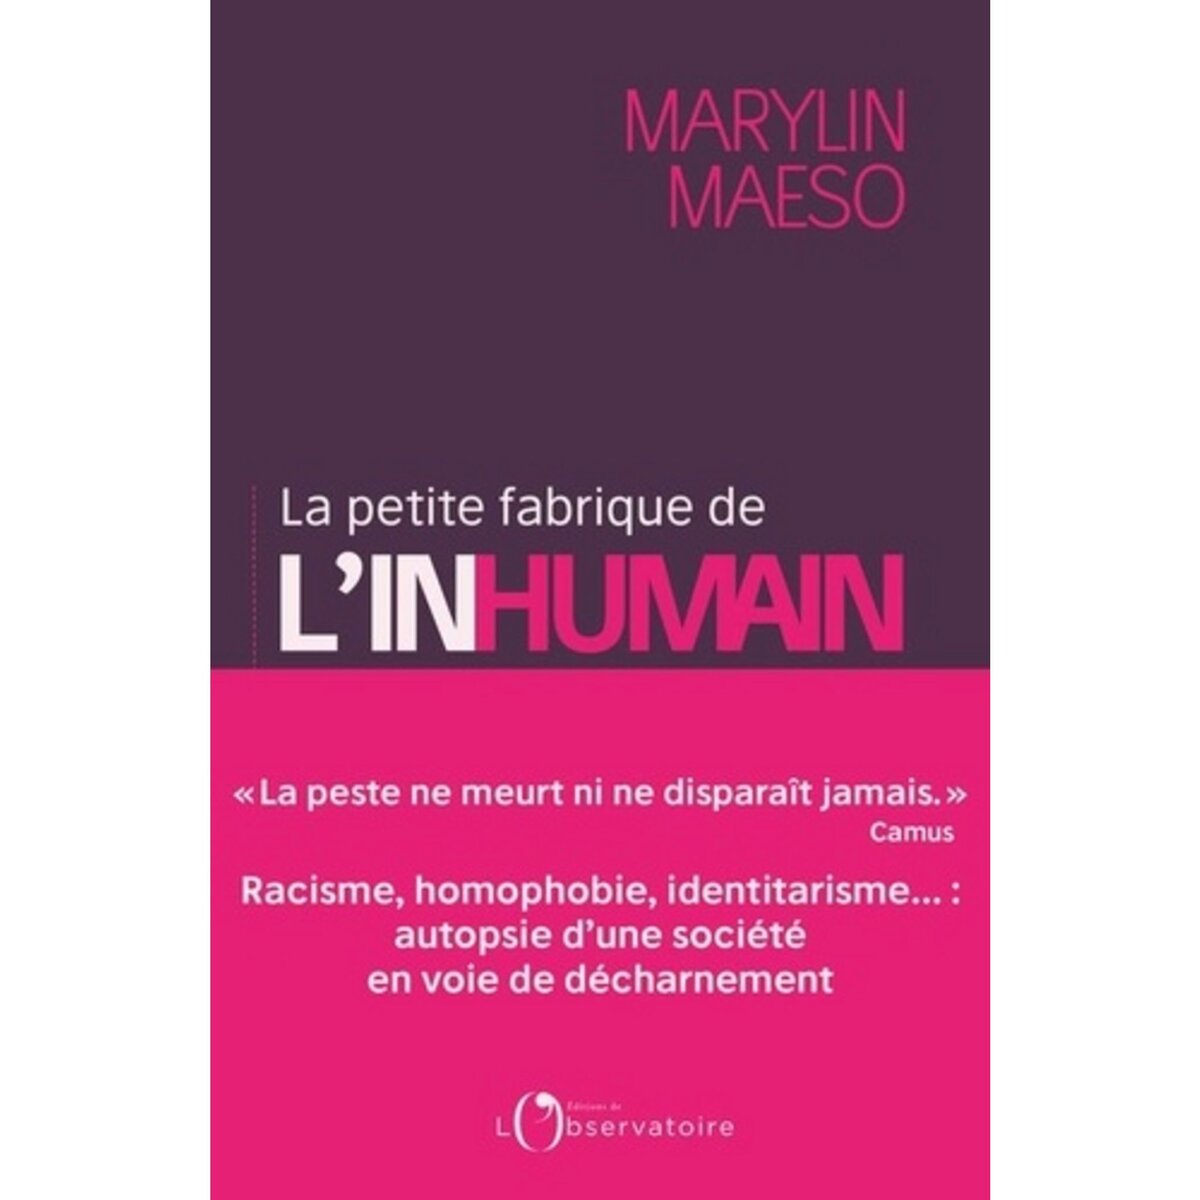  LA PETITE FABRIQUE DE L'INHUMAIN, Maeso Marylin